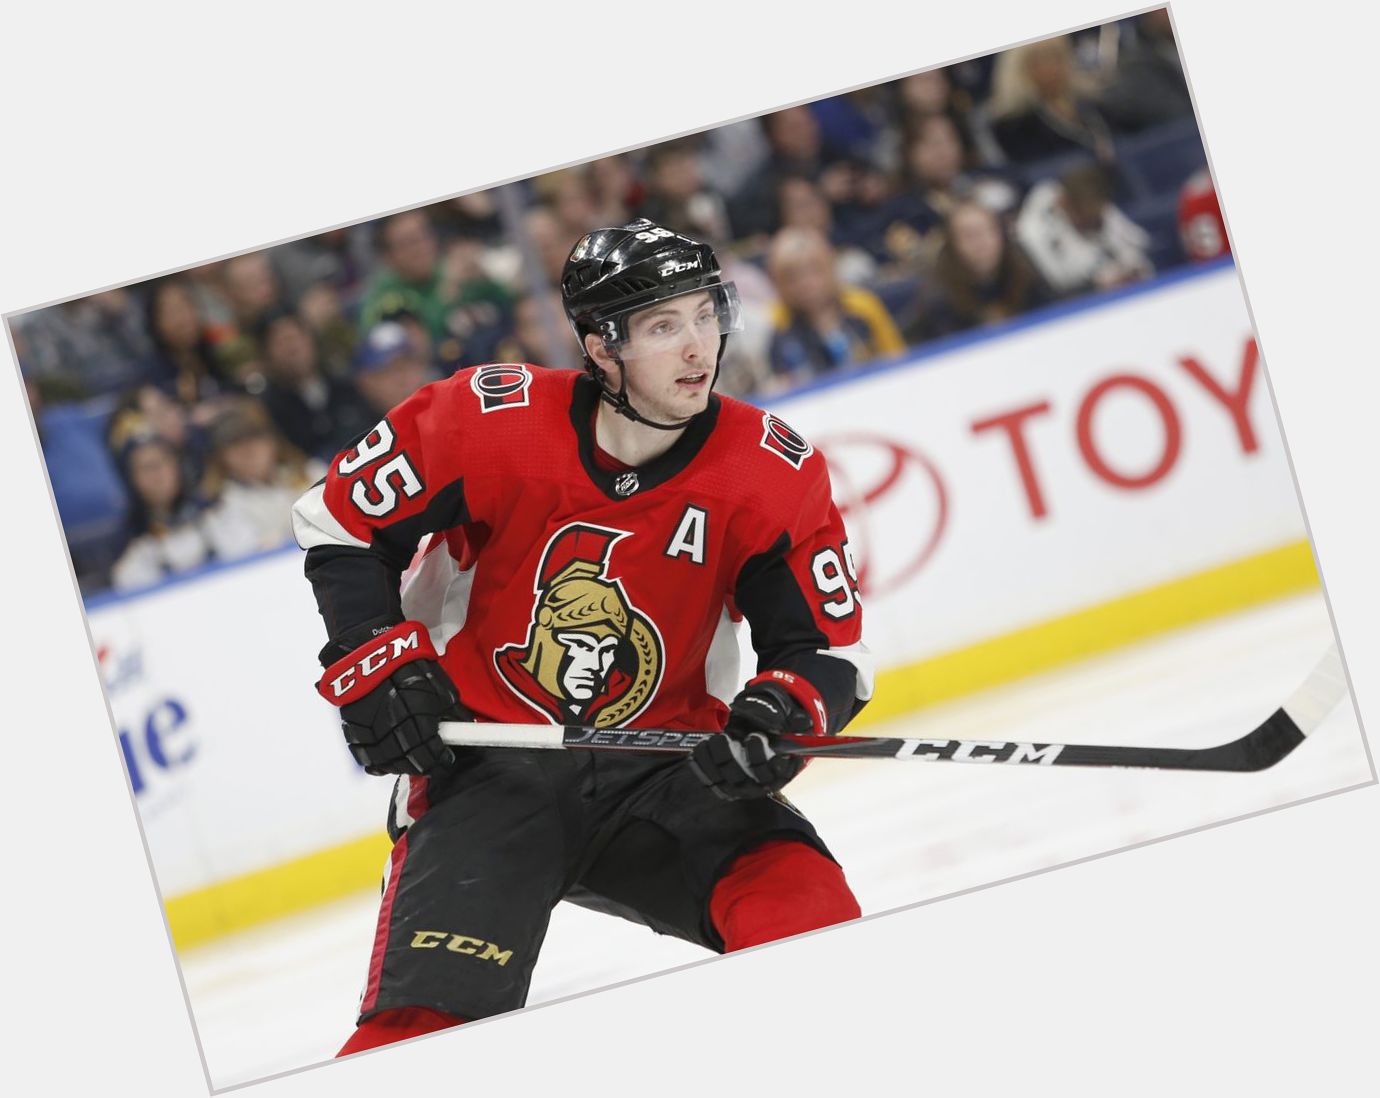 Happy 28th birthday to Matt Duchene of the Ottawa Senators! 